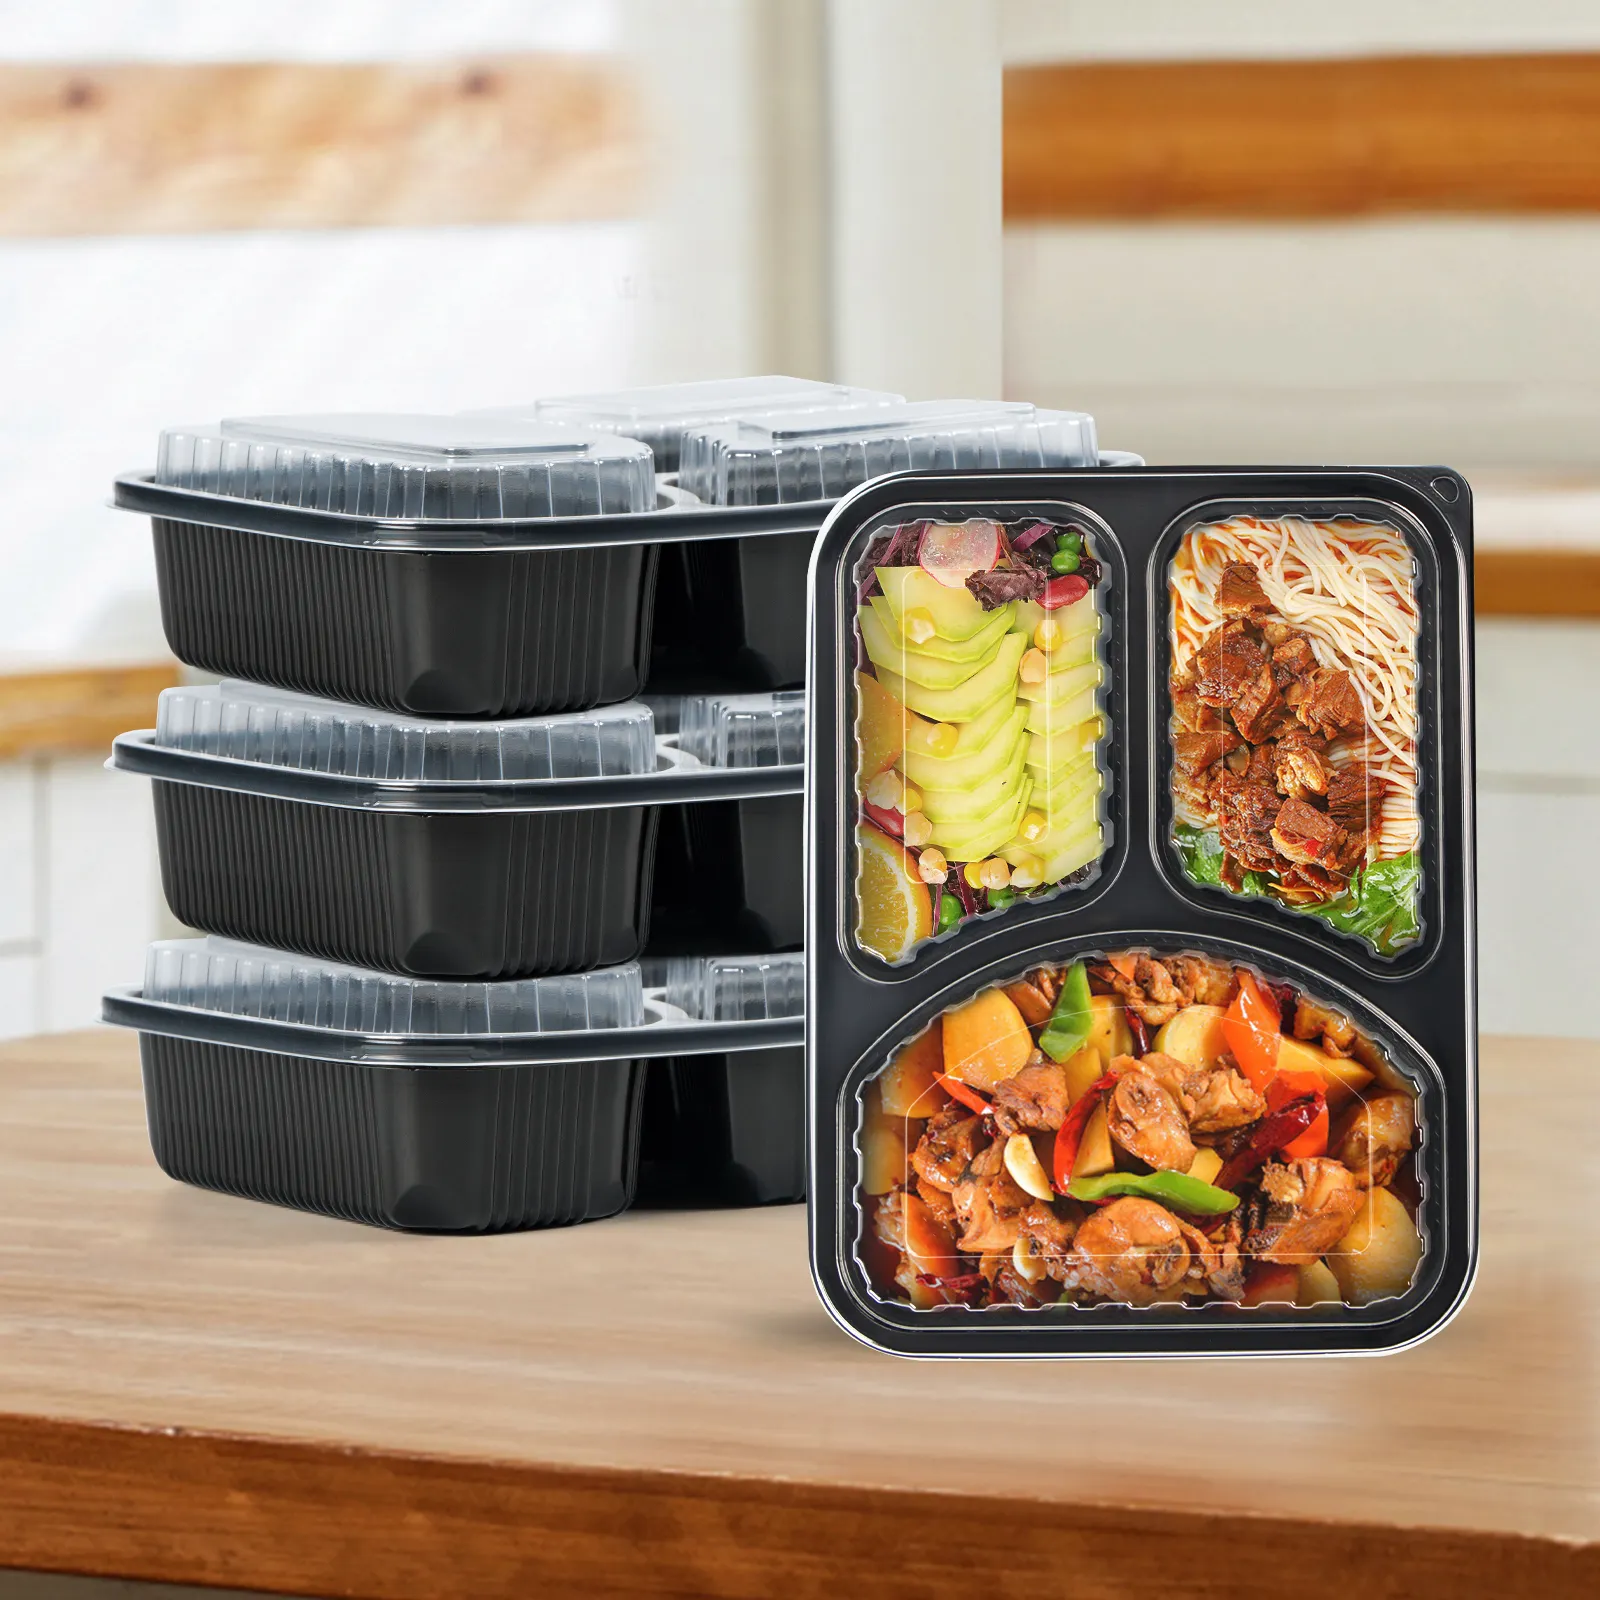 بسعر الجملة خالية من بيسفينول أ علبة طعام بلاستيكية سوداء آمنة للميكروويف مزودة بثلاثة أقسام